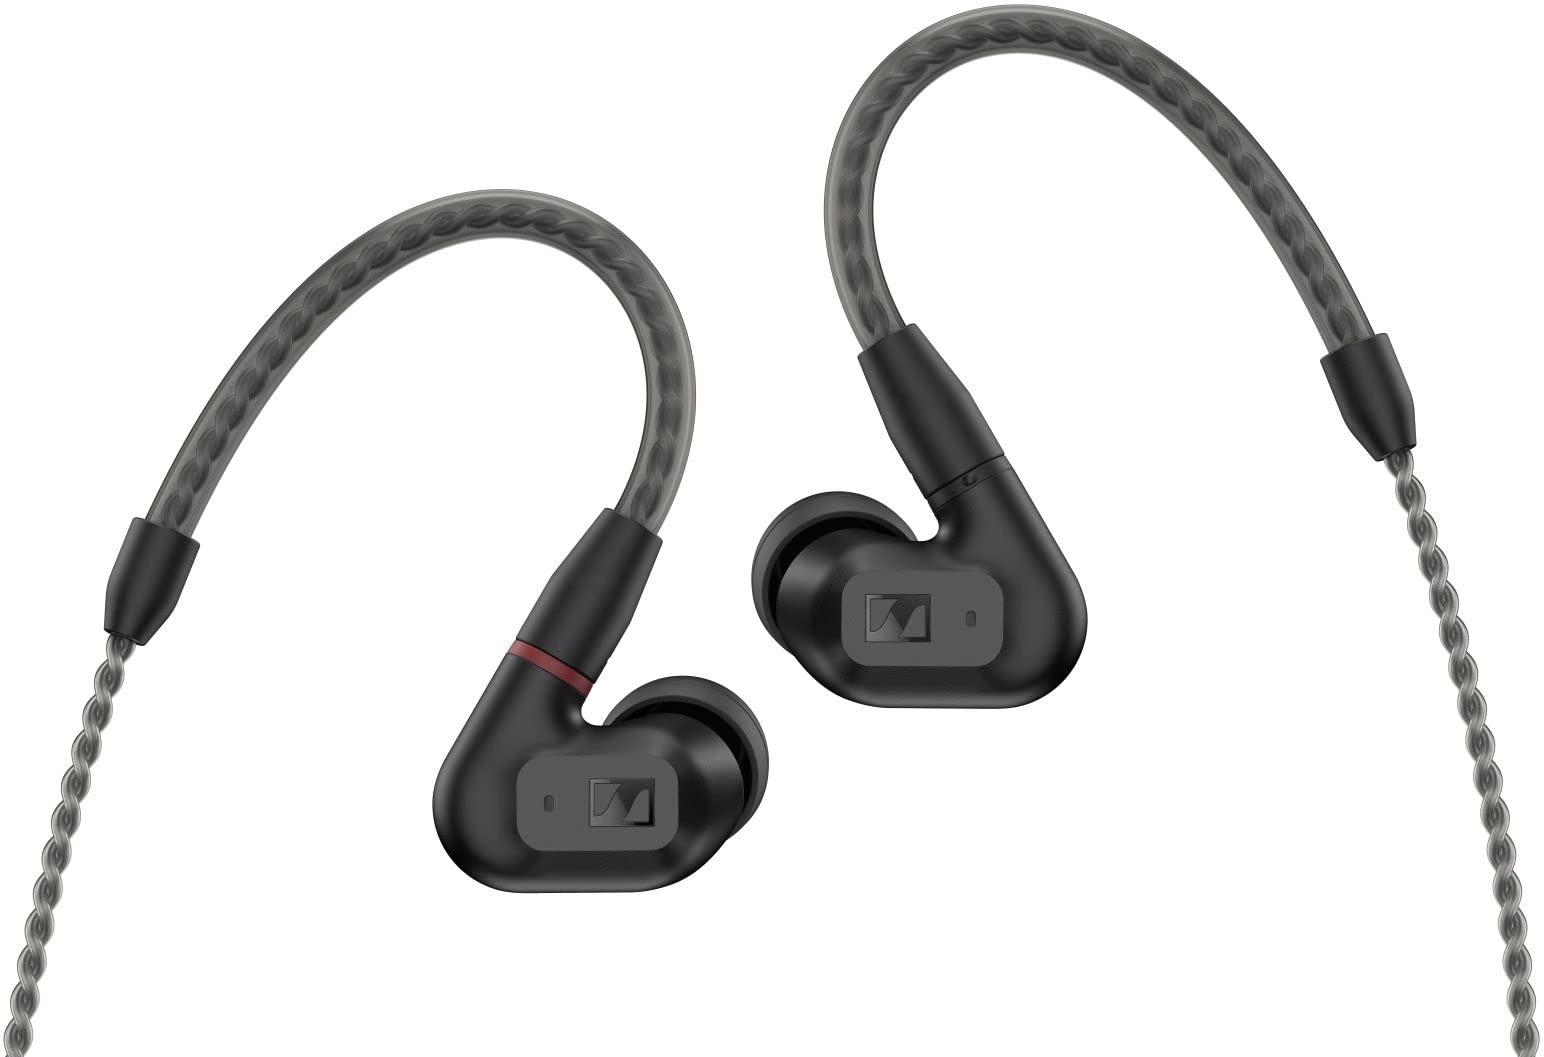 Sennheiser IE 200 kabelgebundene Audiophile Stereo Kopfhörer - In-Ear Earbuds mit Kabel - mit klarem, überlegenem Hi-Fi Sound, lebensechter Intonation und beeindruckendem Bass - Schwarz